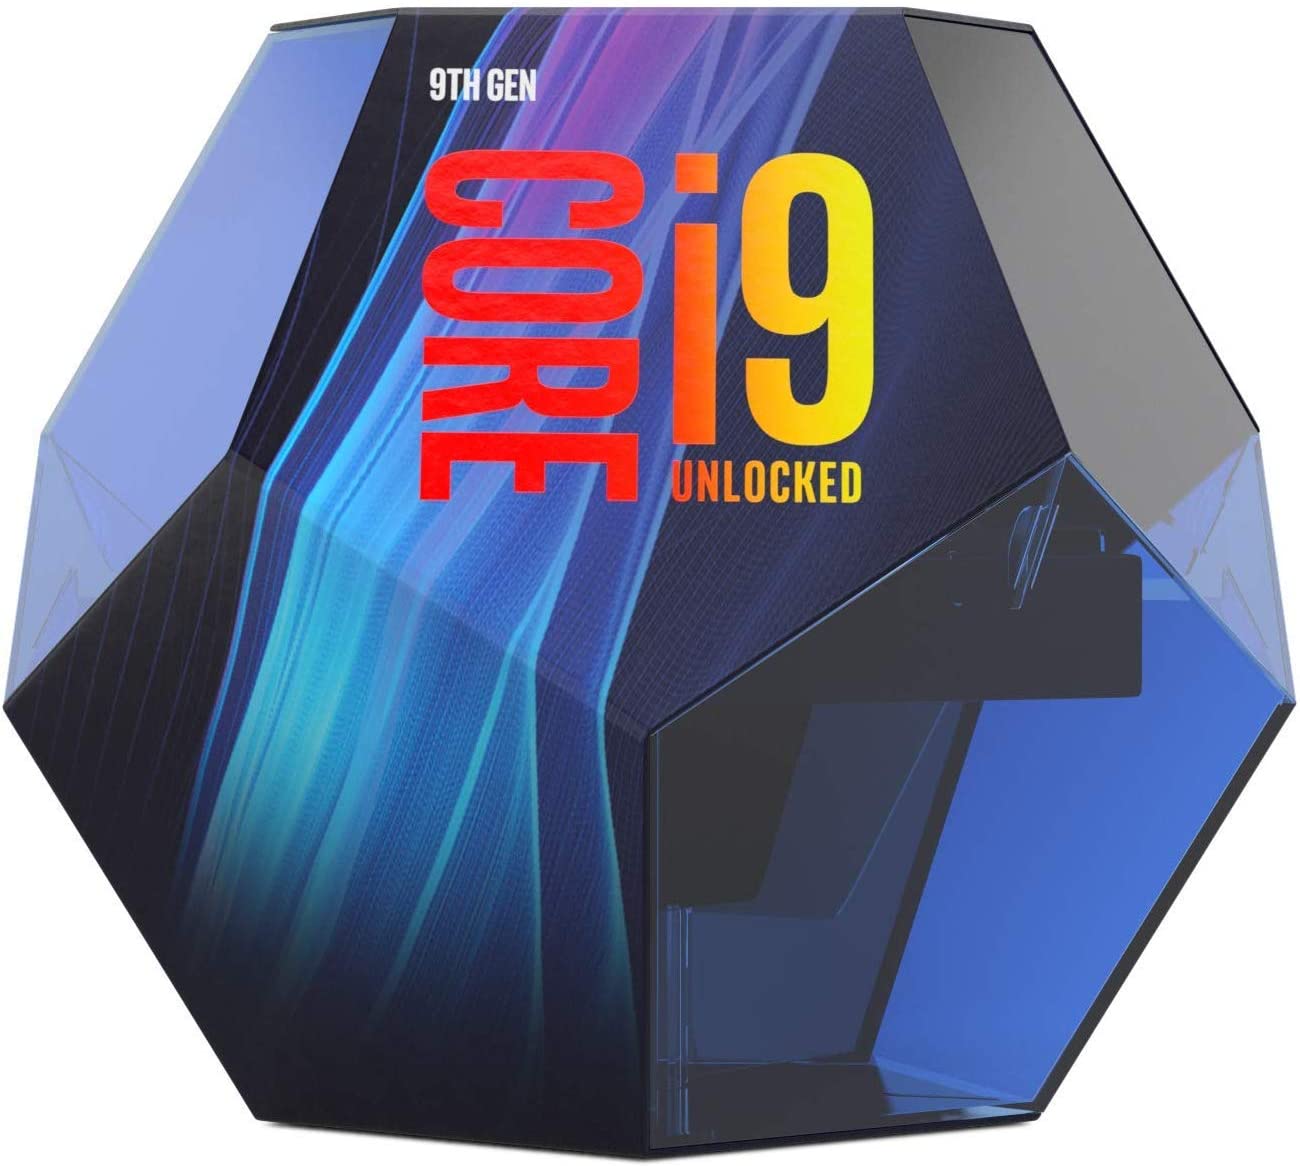 معالج Intel CPU 9th Gen Core i9-9900K الجيل التاسع